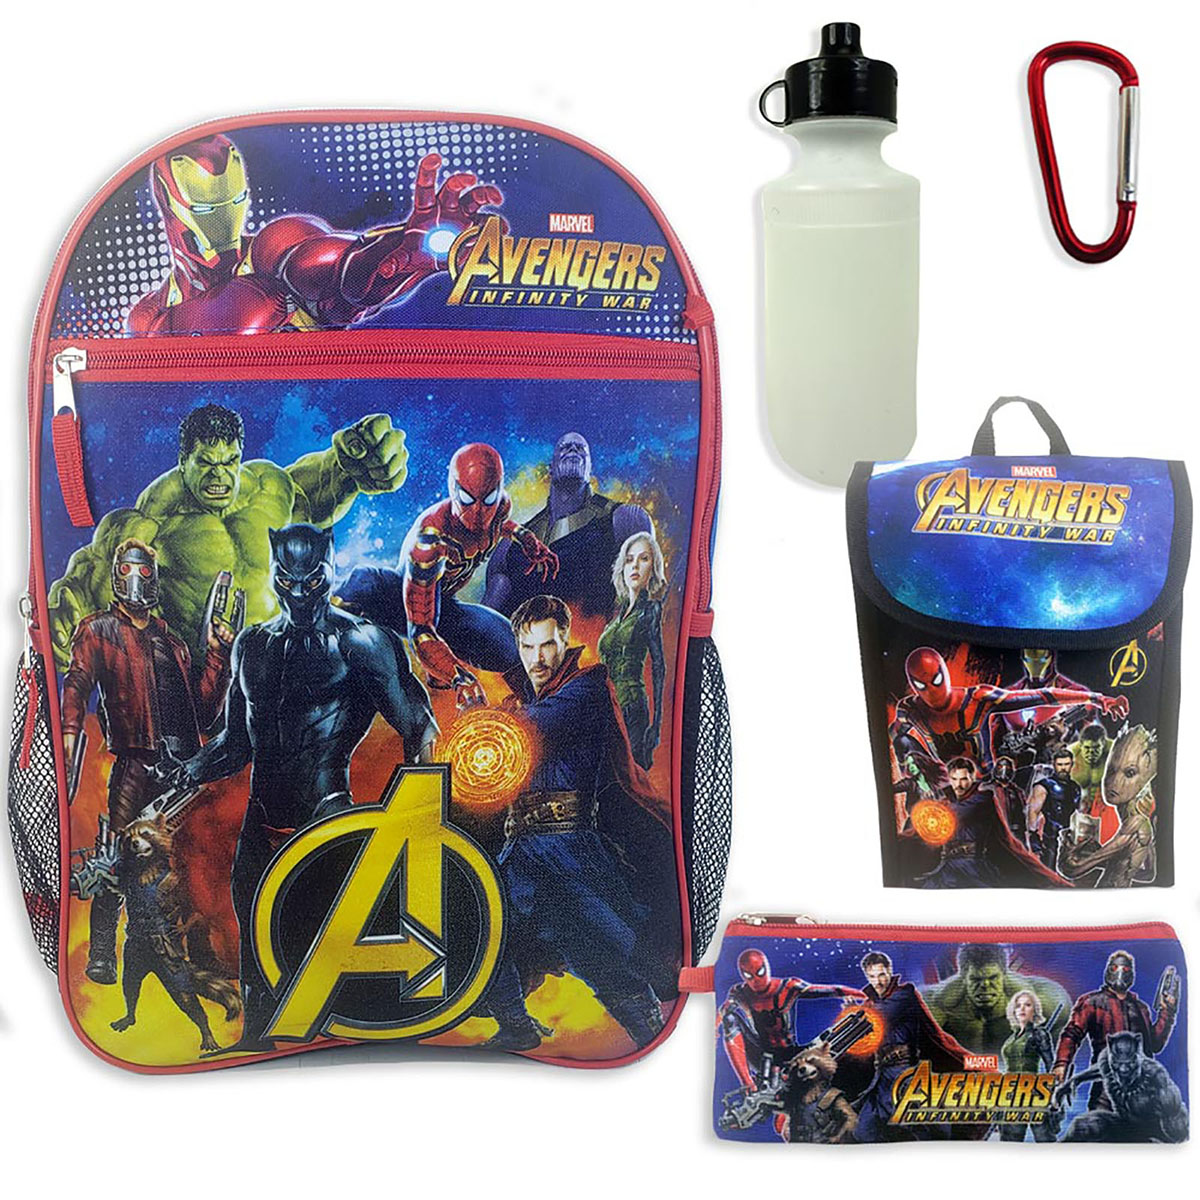 Marvel Avengers Infinity War "5 in 1" Backpack